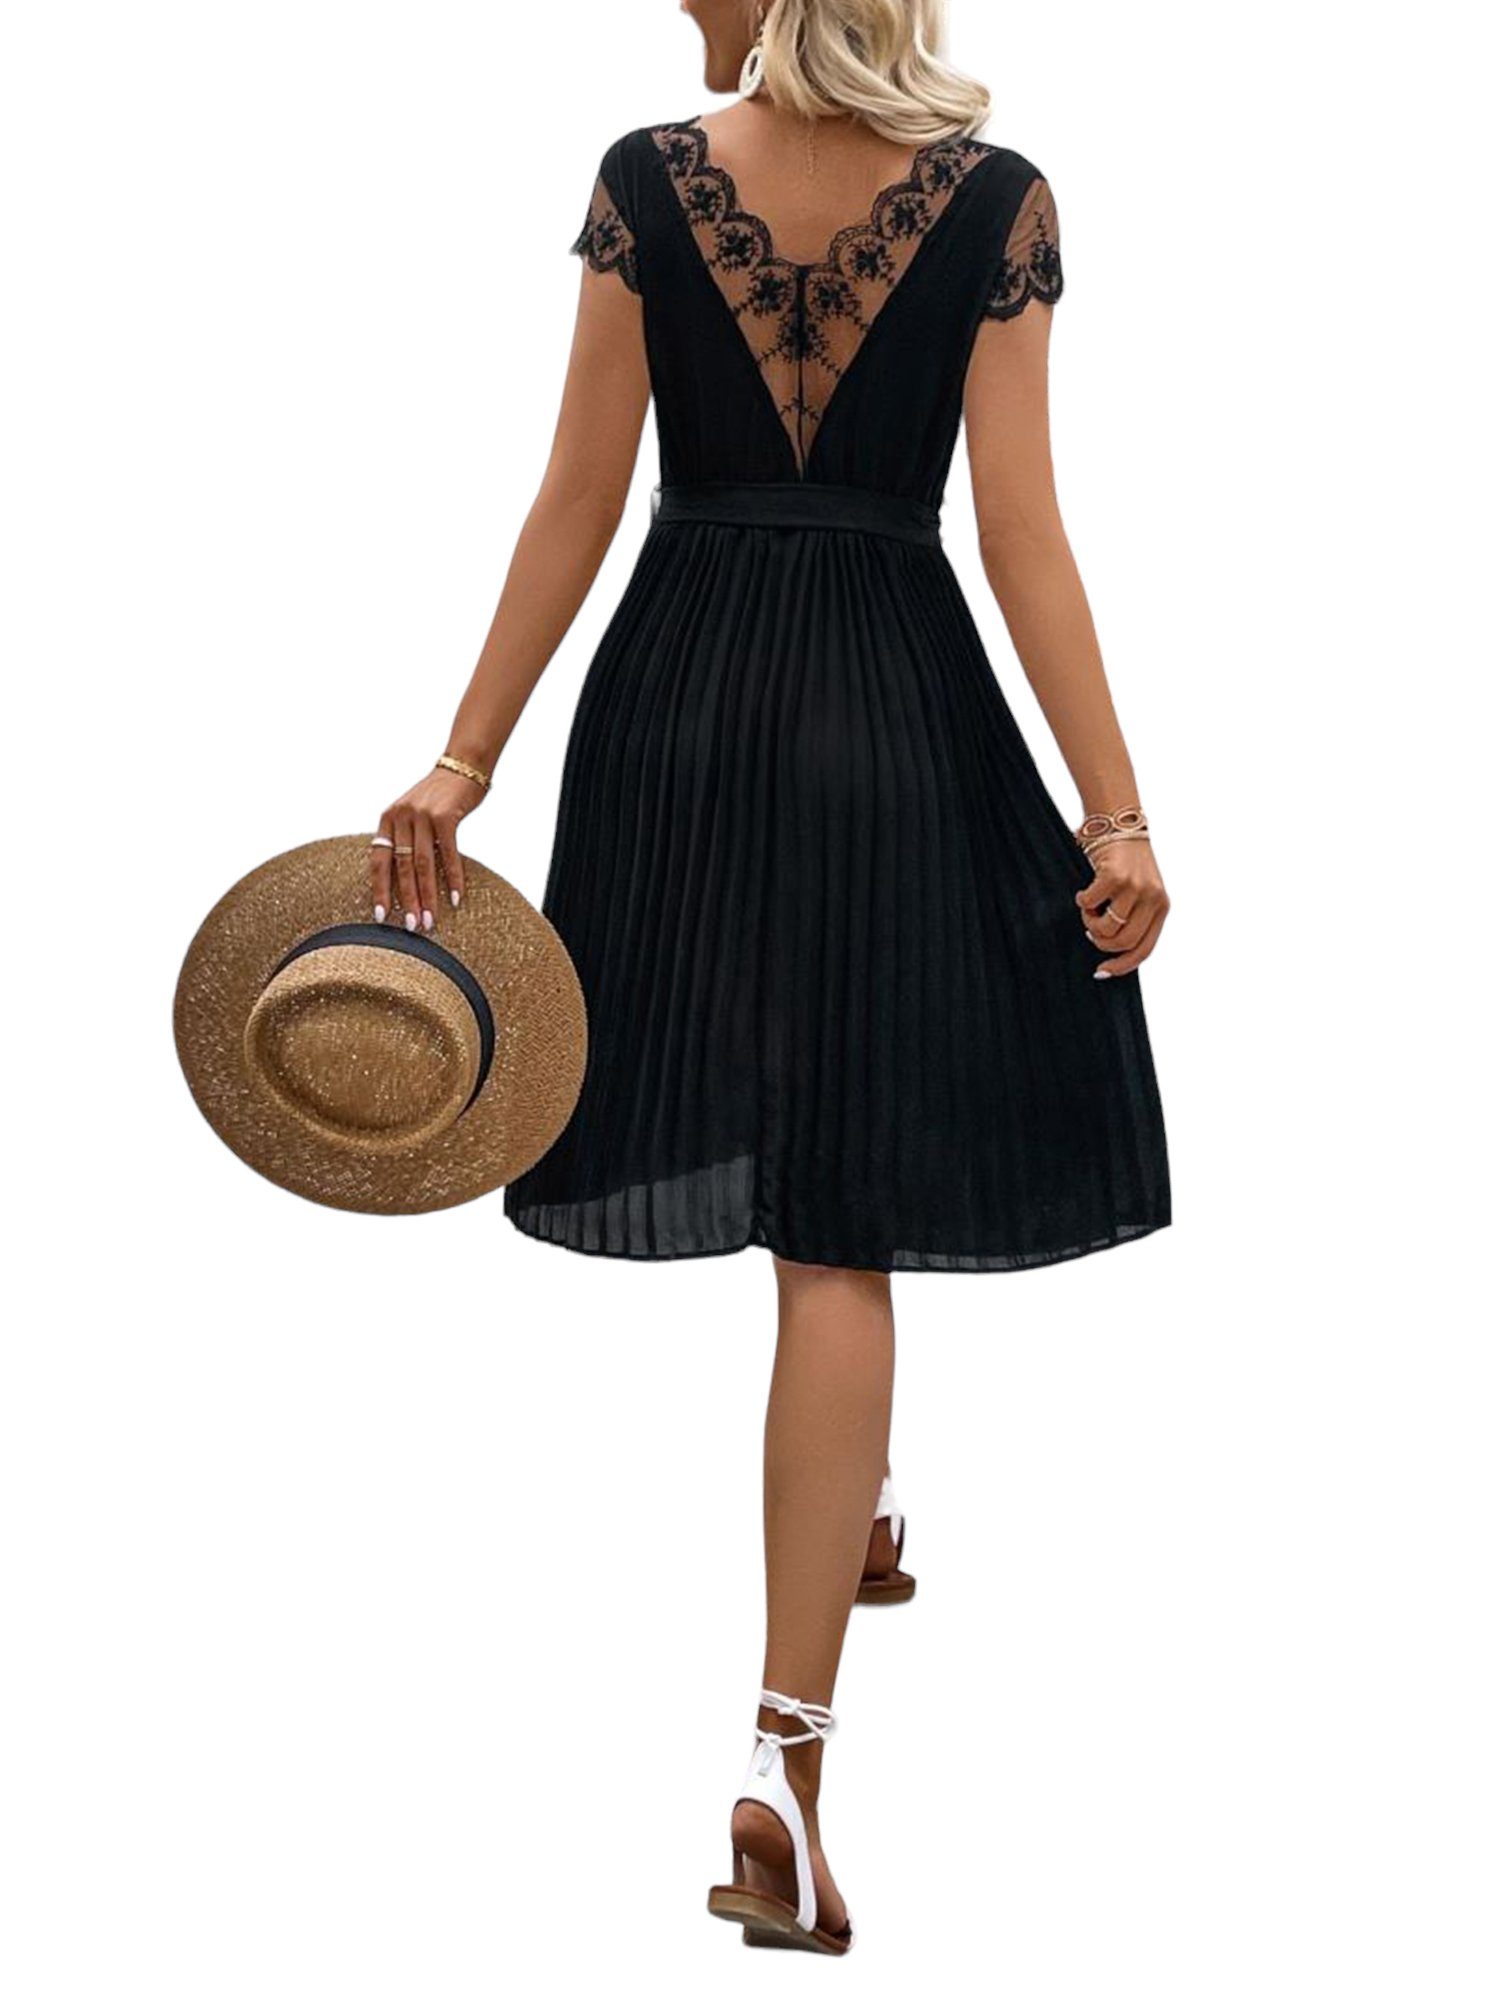 PYL A-Linien-Kleid Damen Elegant Pleated A-Linien-Kleid mit Tiefer V-Rücken  36-42 Größe